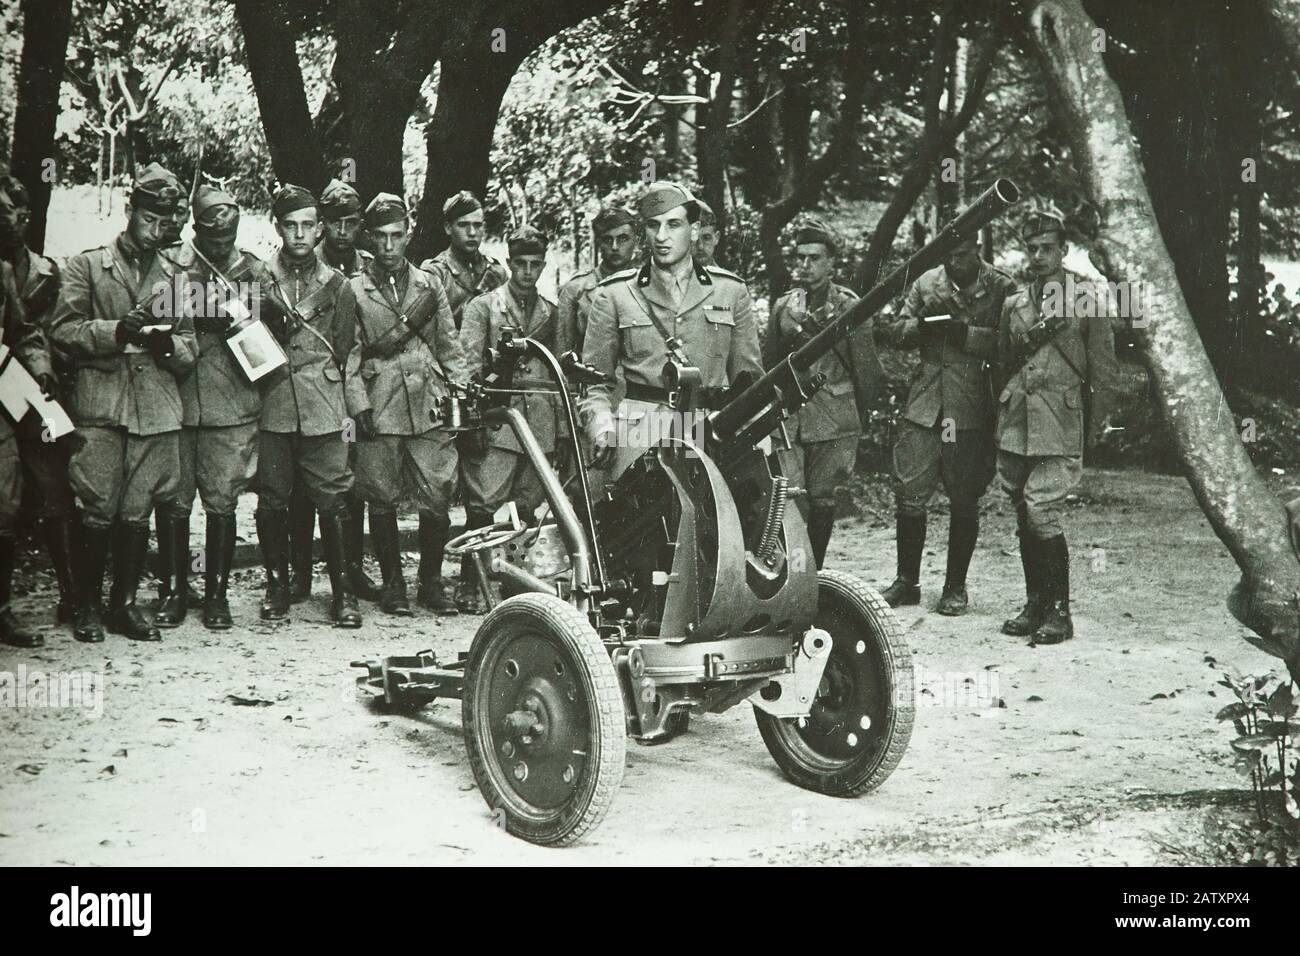 Regio Esercito Italiano, artiglieria, Breda 20/65 Mod. 1935 anni '30 - esercito italiano prima della seconda guerra mondiale - foto storica Foto Stock